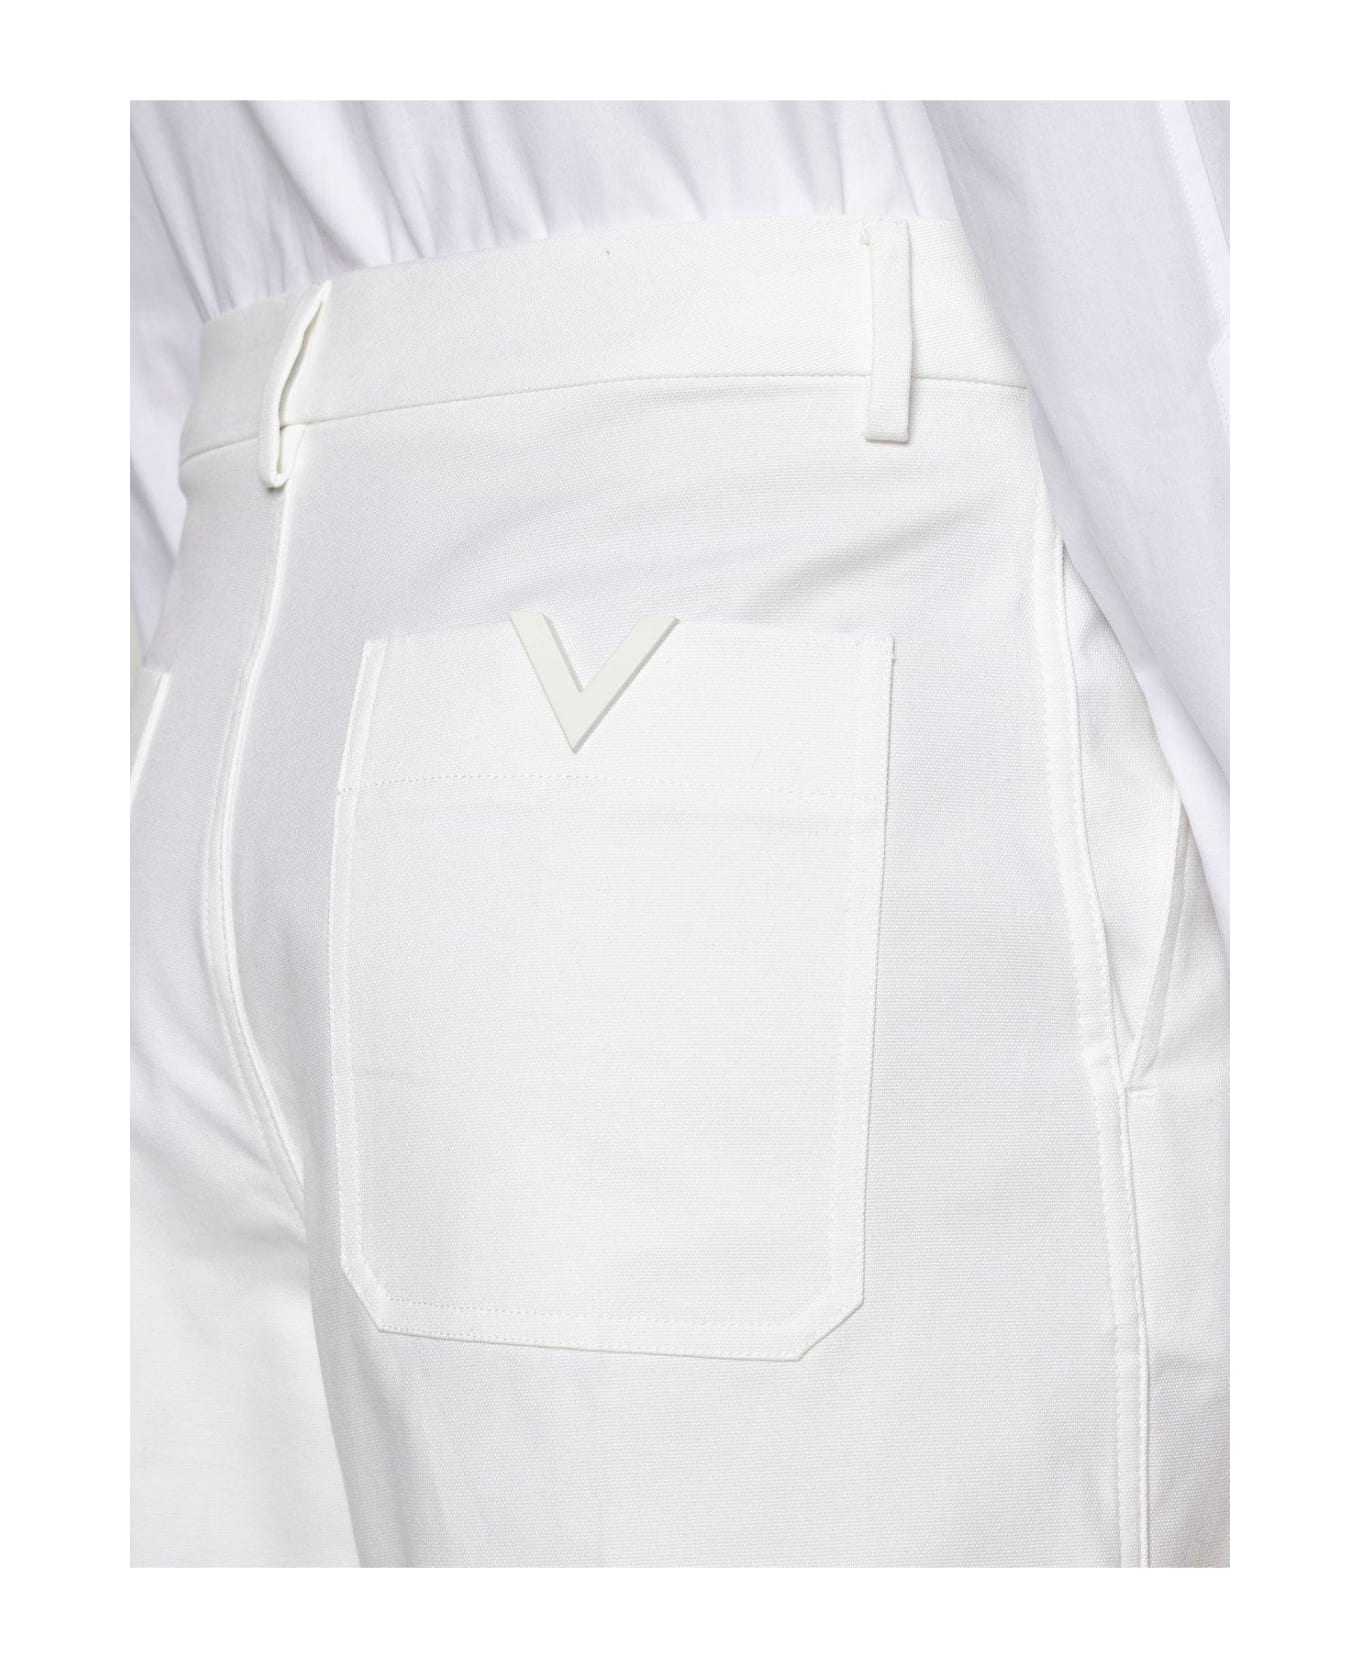 Valentino Logo Plaque Bermuda Shorts - White ショートパンツ